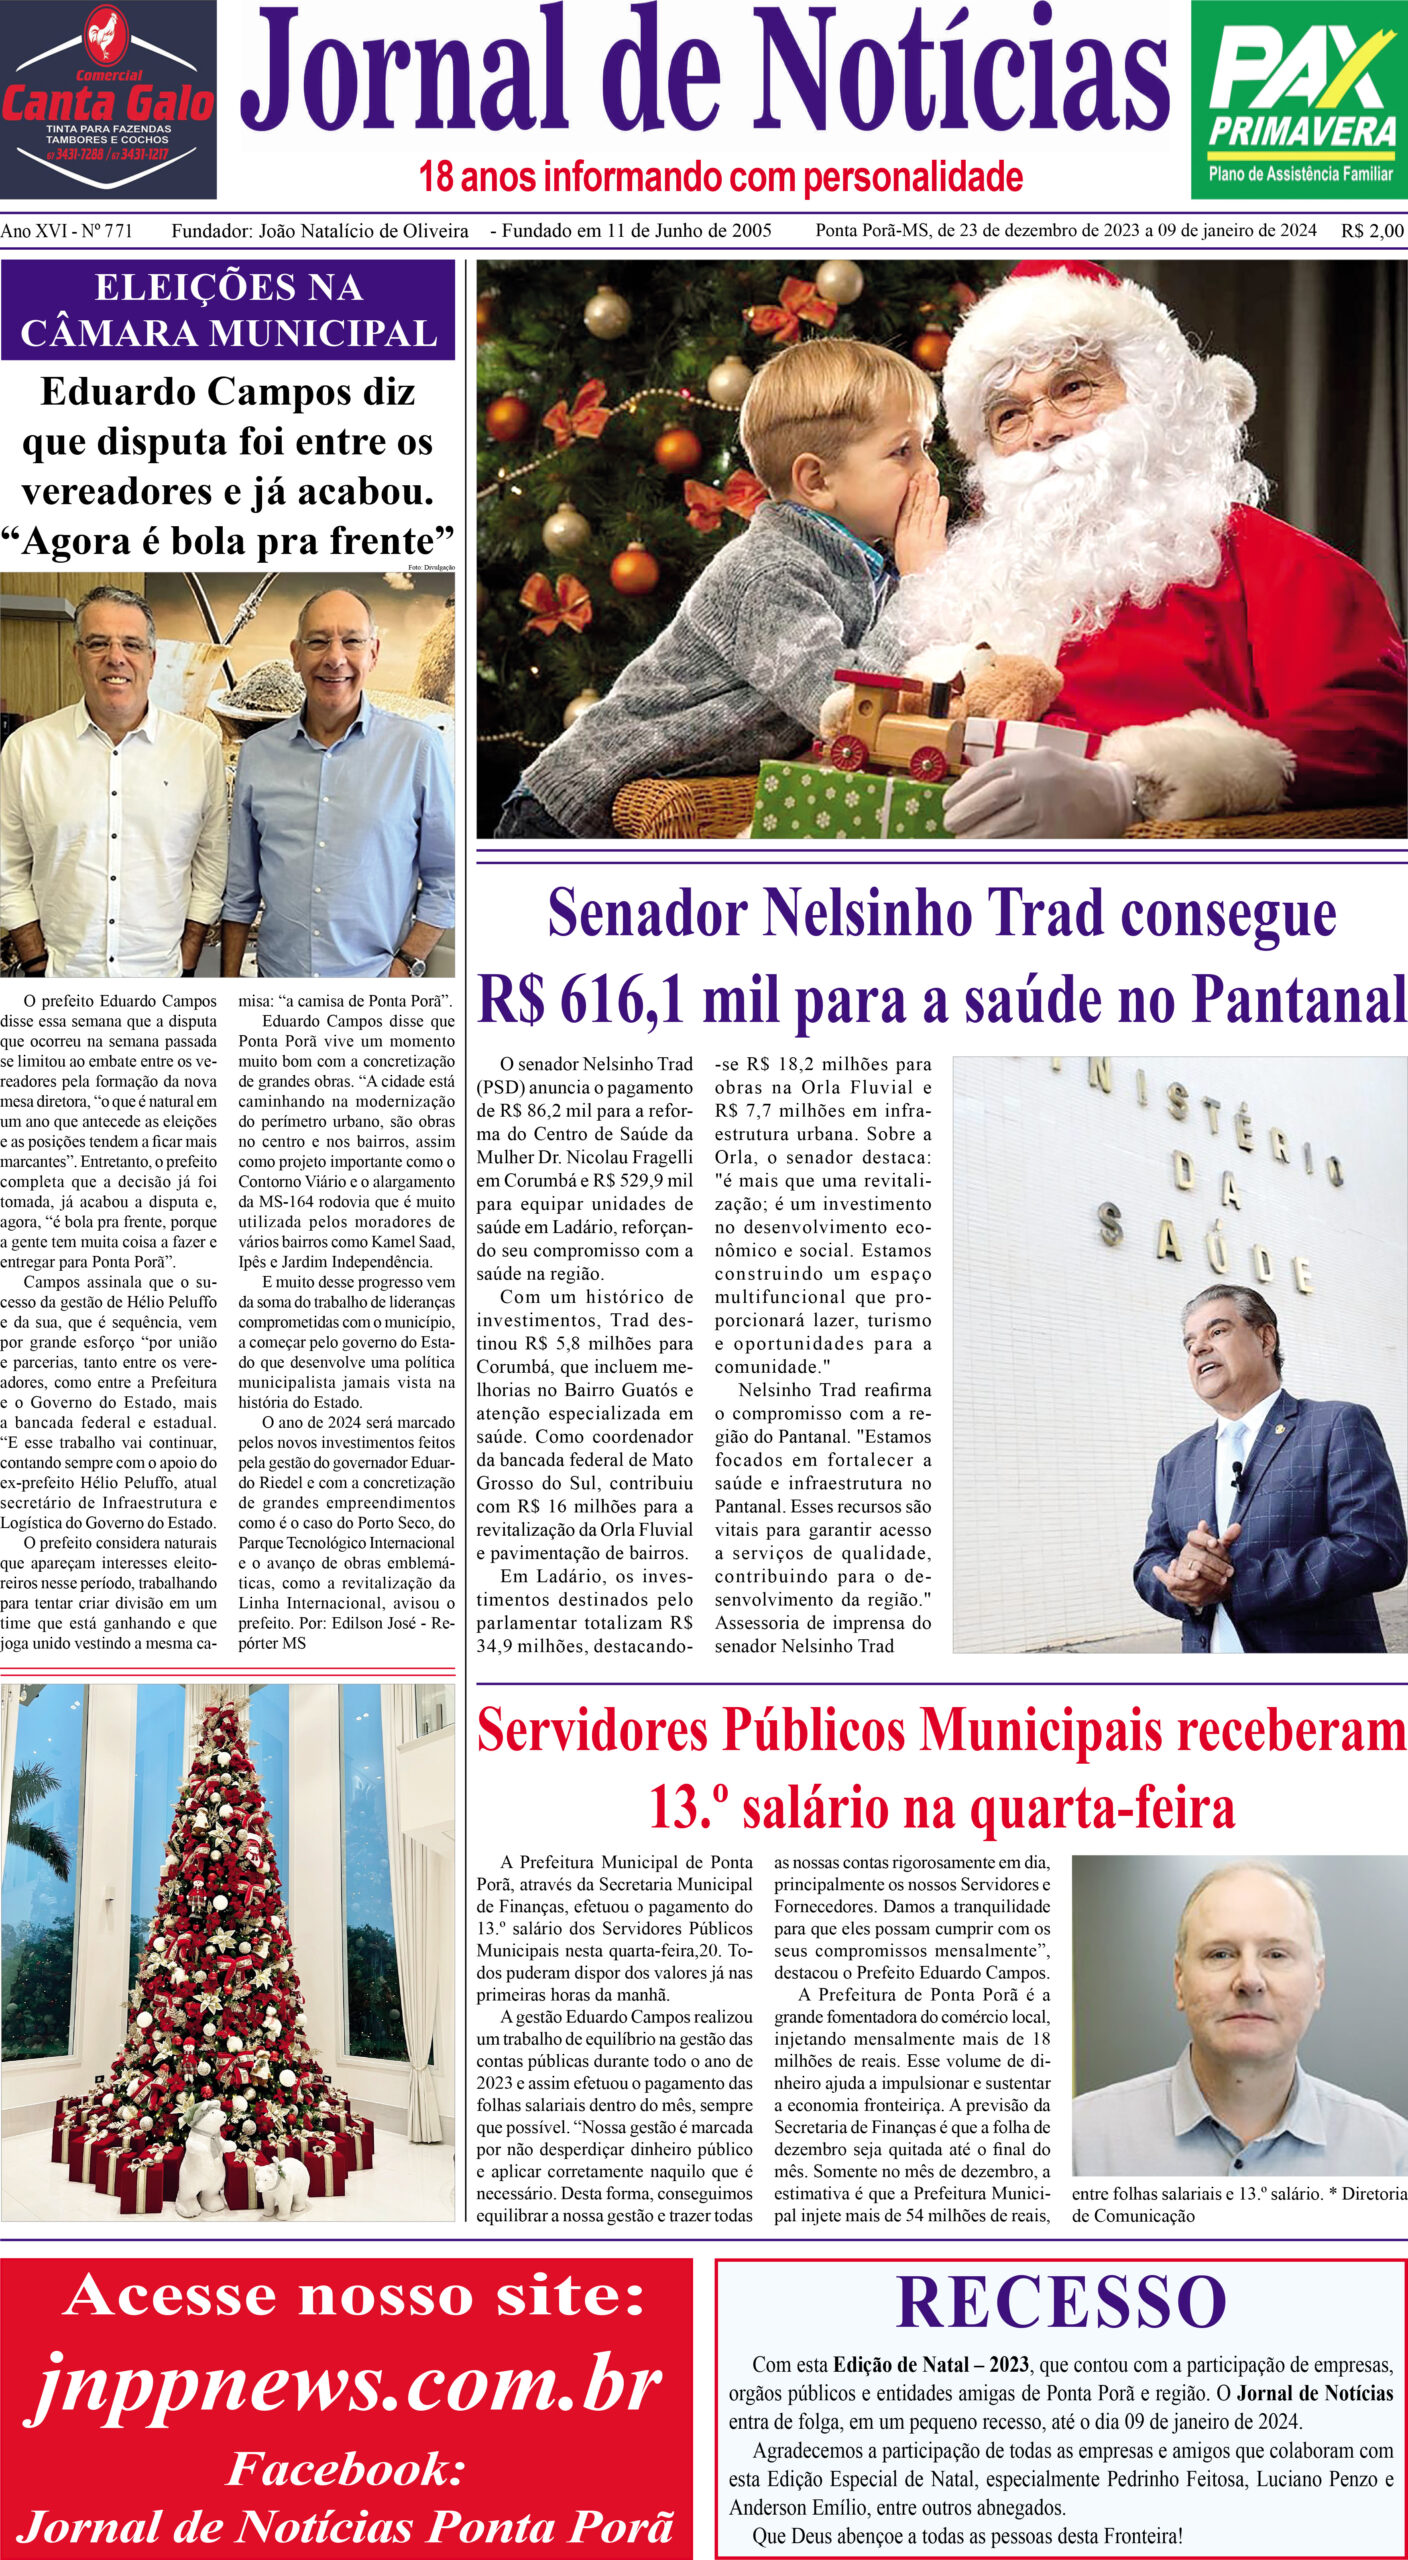 Acompanhe o jornal impresso, Jornal de Notícias, edição especial de fim de Ano